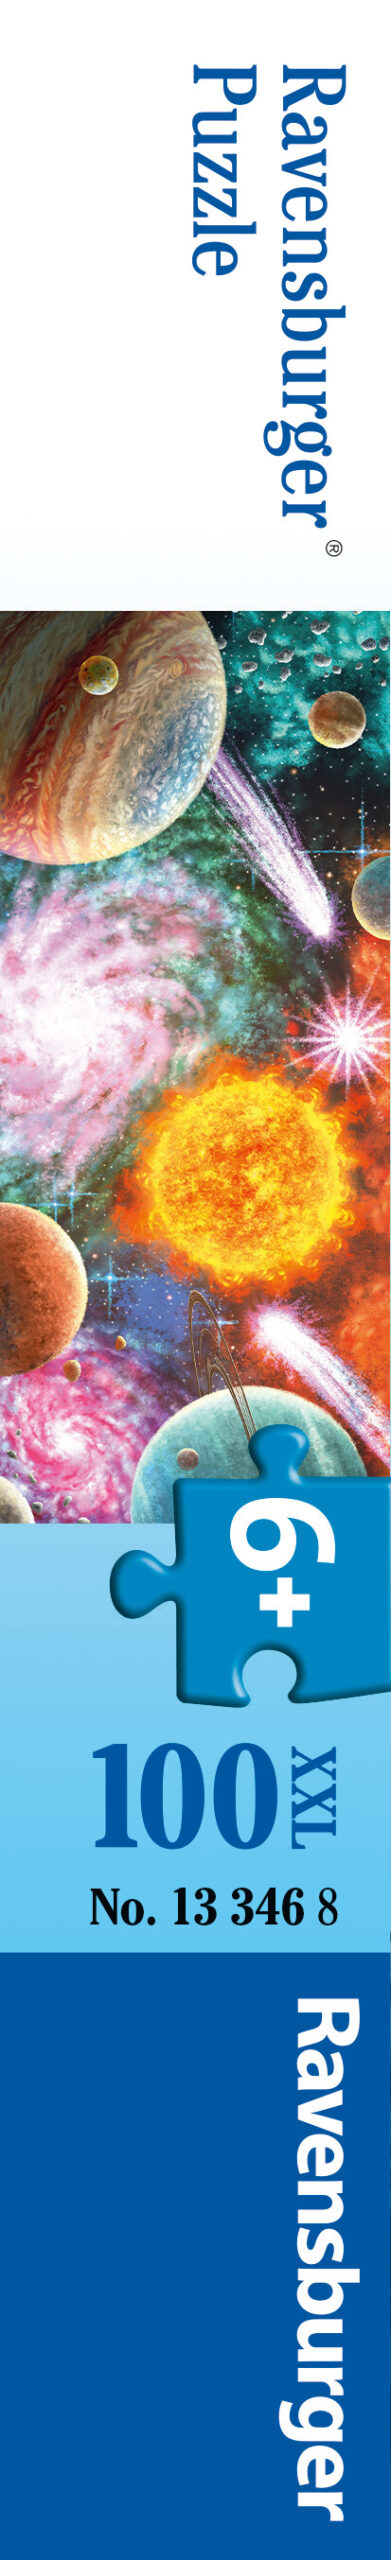 Ravensburger - puzzle stelle e pianeti, 100 pezzi xxl, età raccomandata 6+ anni - RAVENSBURGER